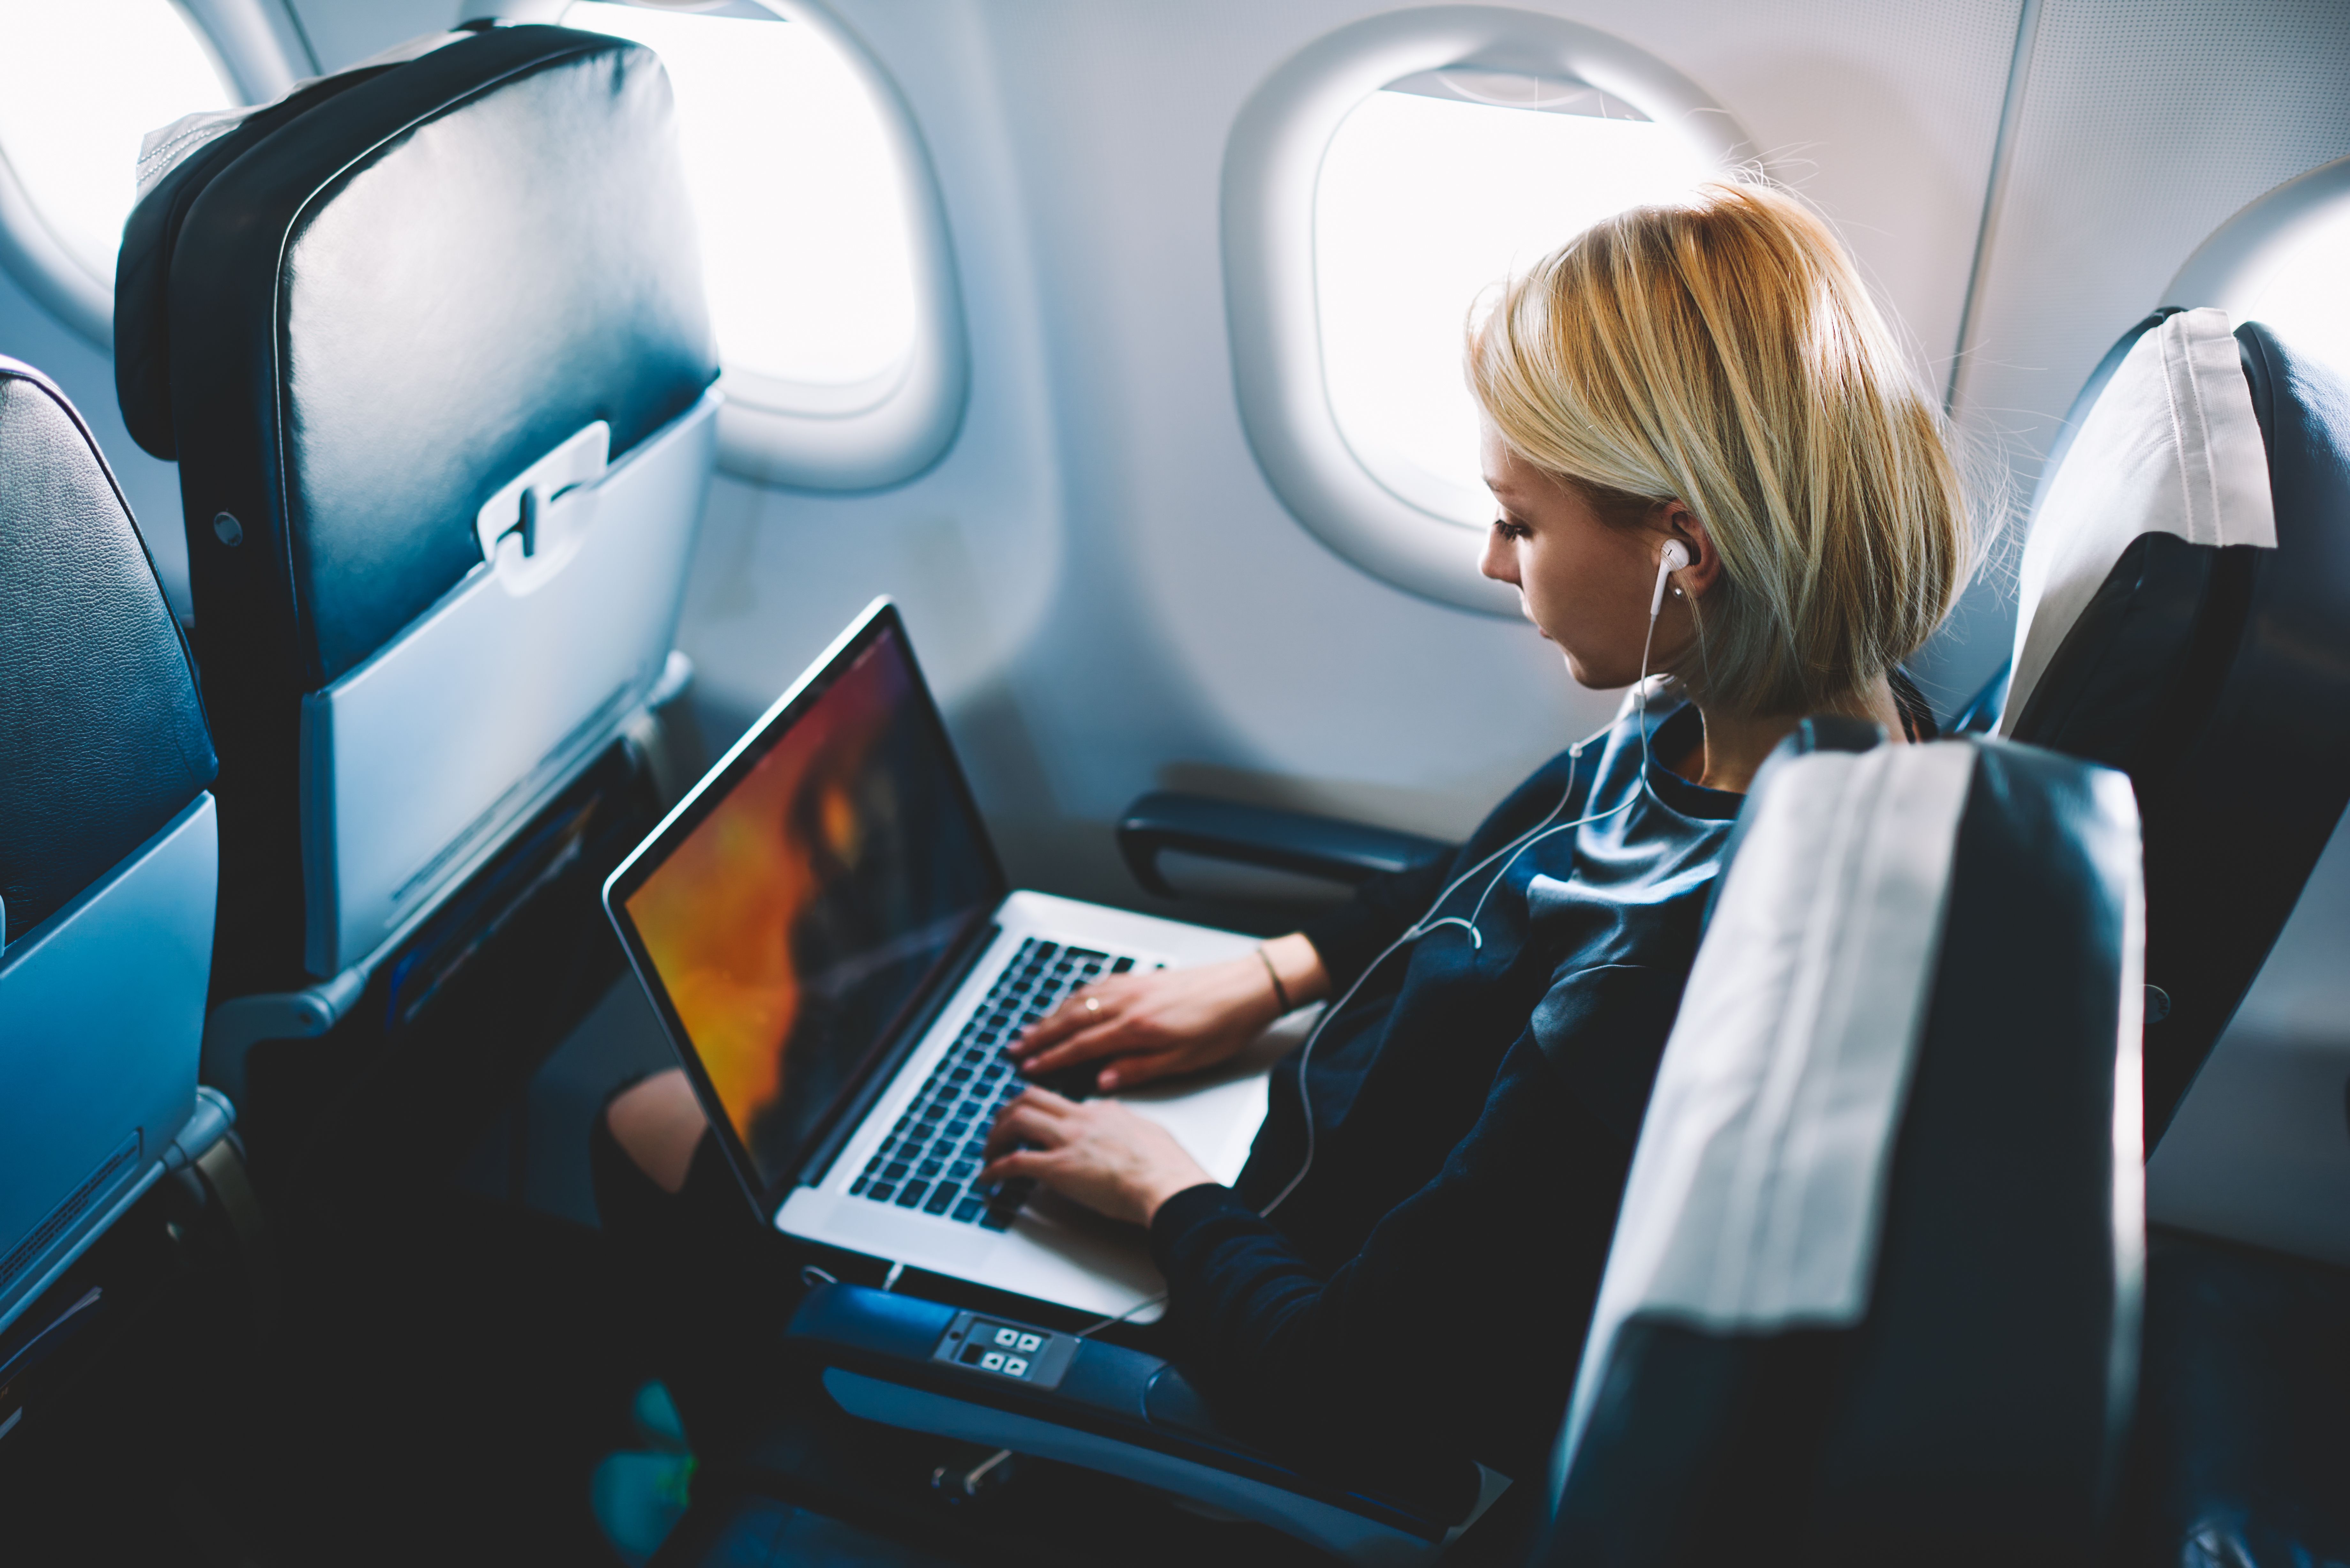 A passenger uses a laptop onboard an aircraft.